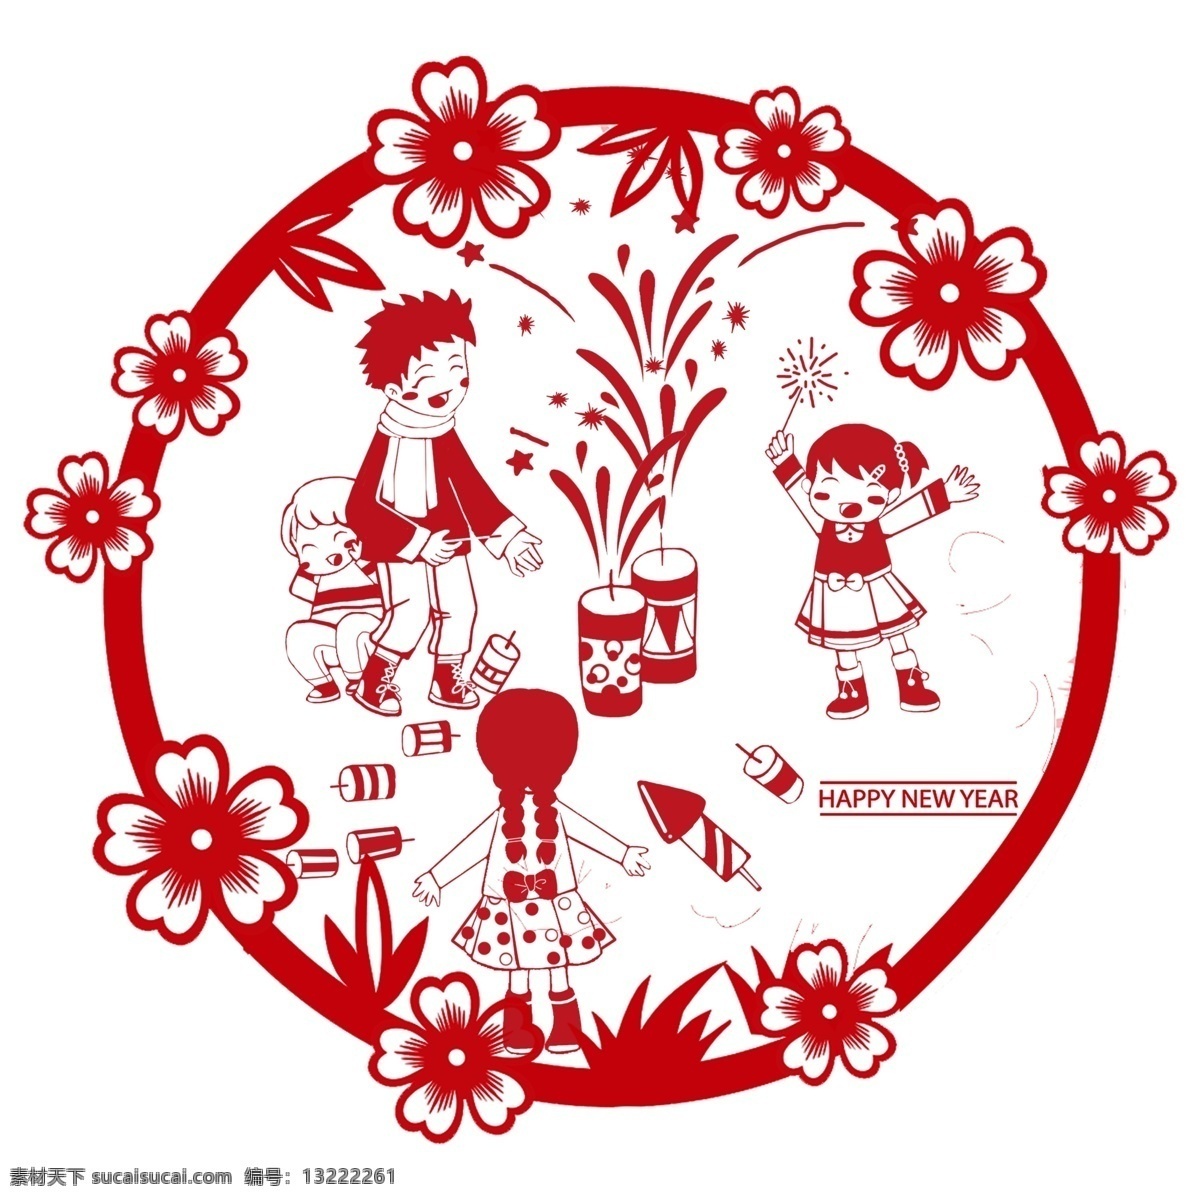 卡通 手绘 春节 创意 红色 剪纸 创意海报 创意设计 卡通手绘 水彩 彩色 海报 装饰品 圆形剪纸 节日 庆祝